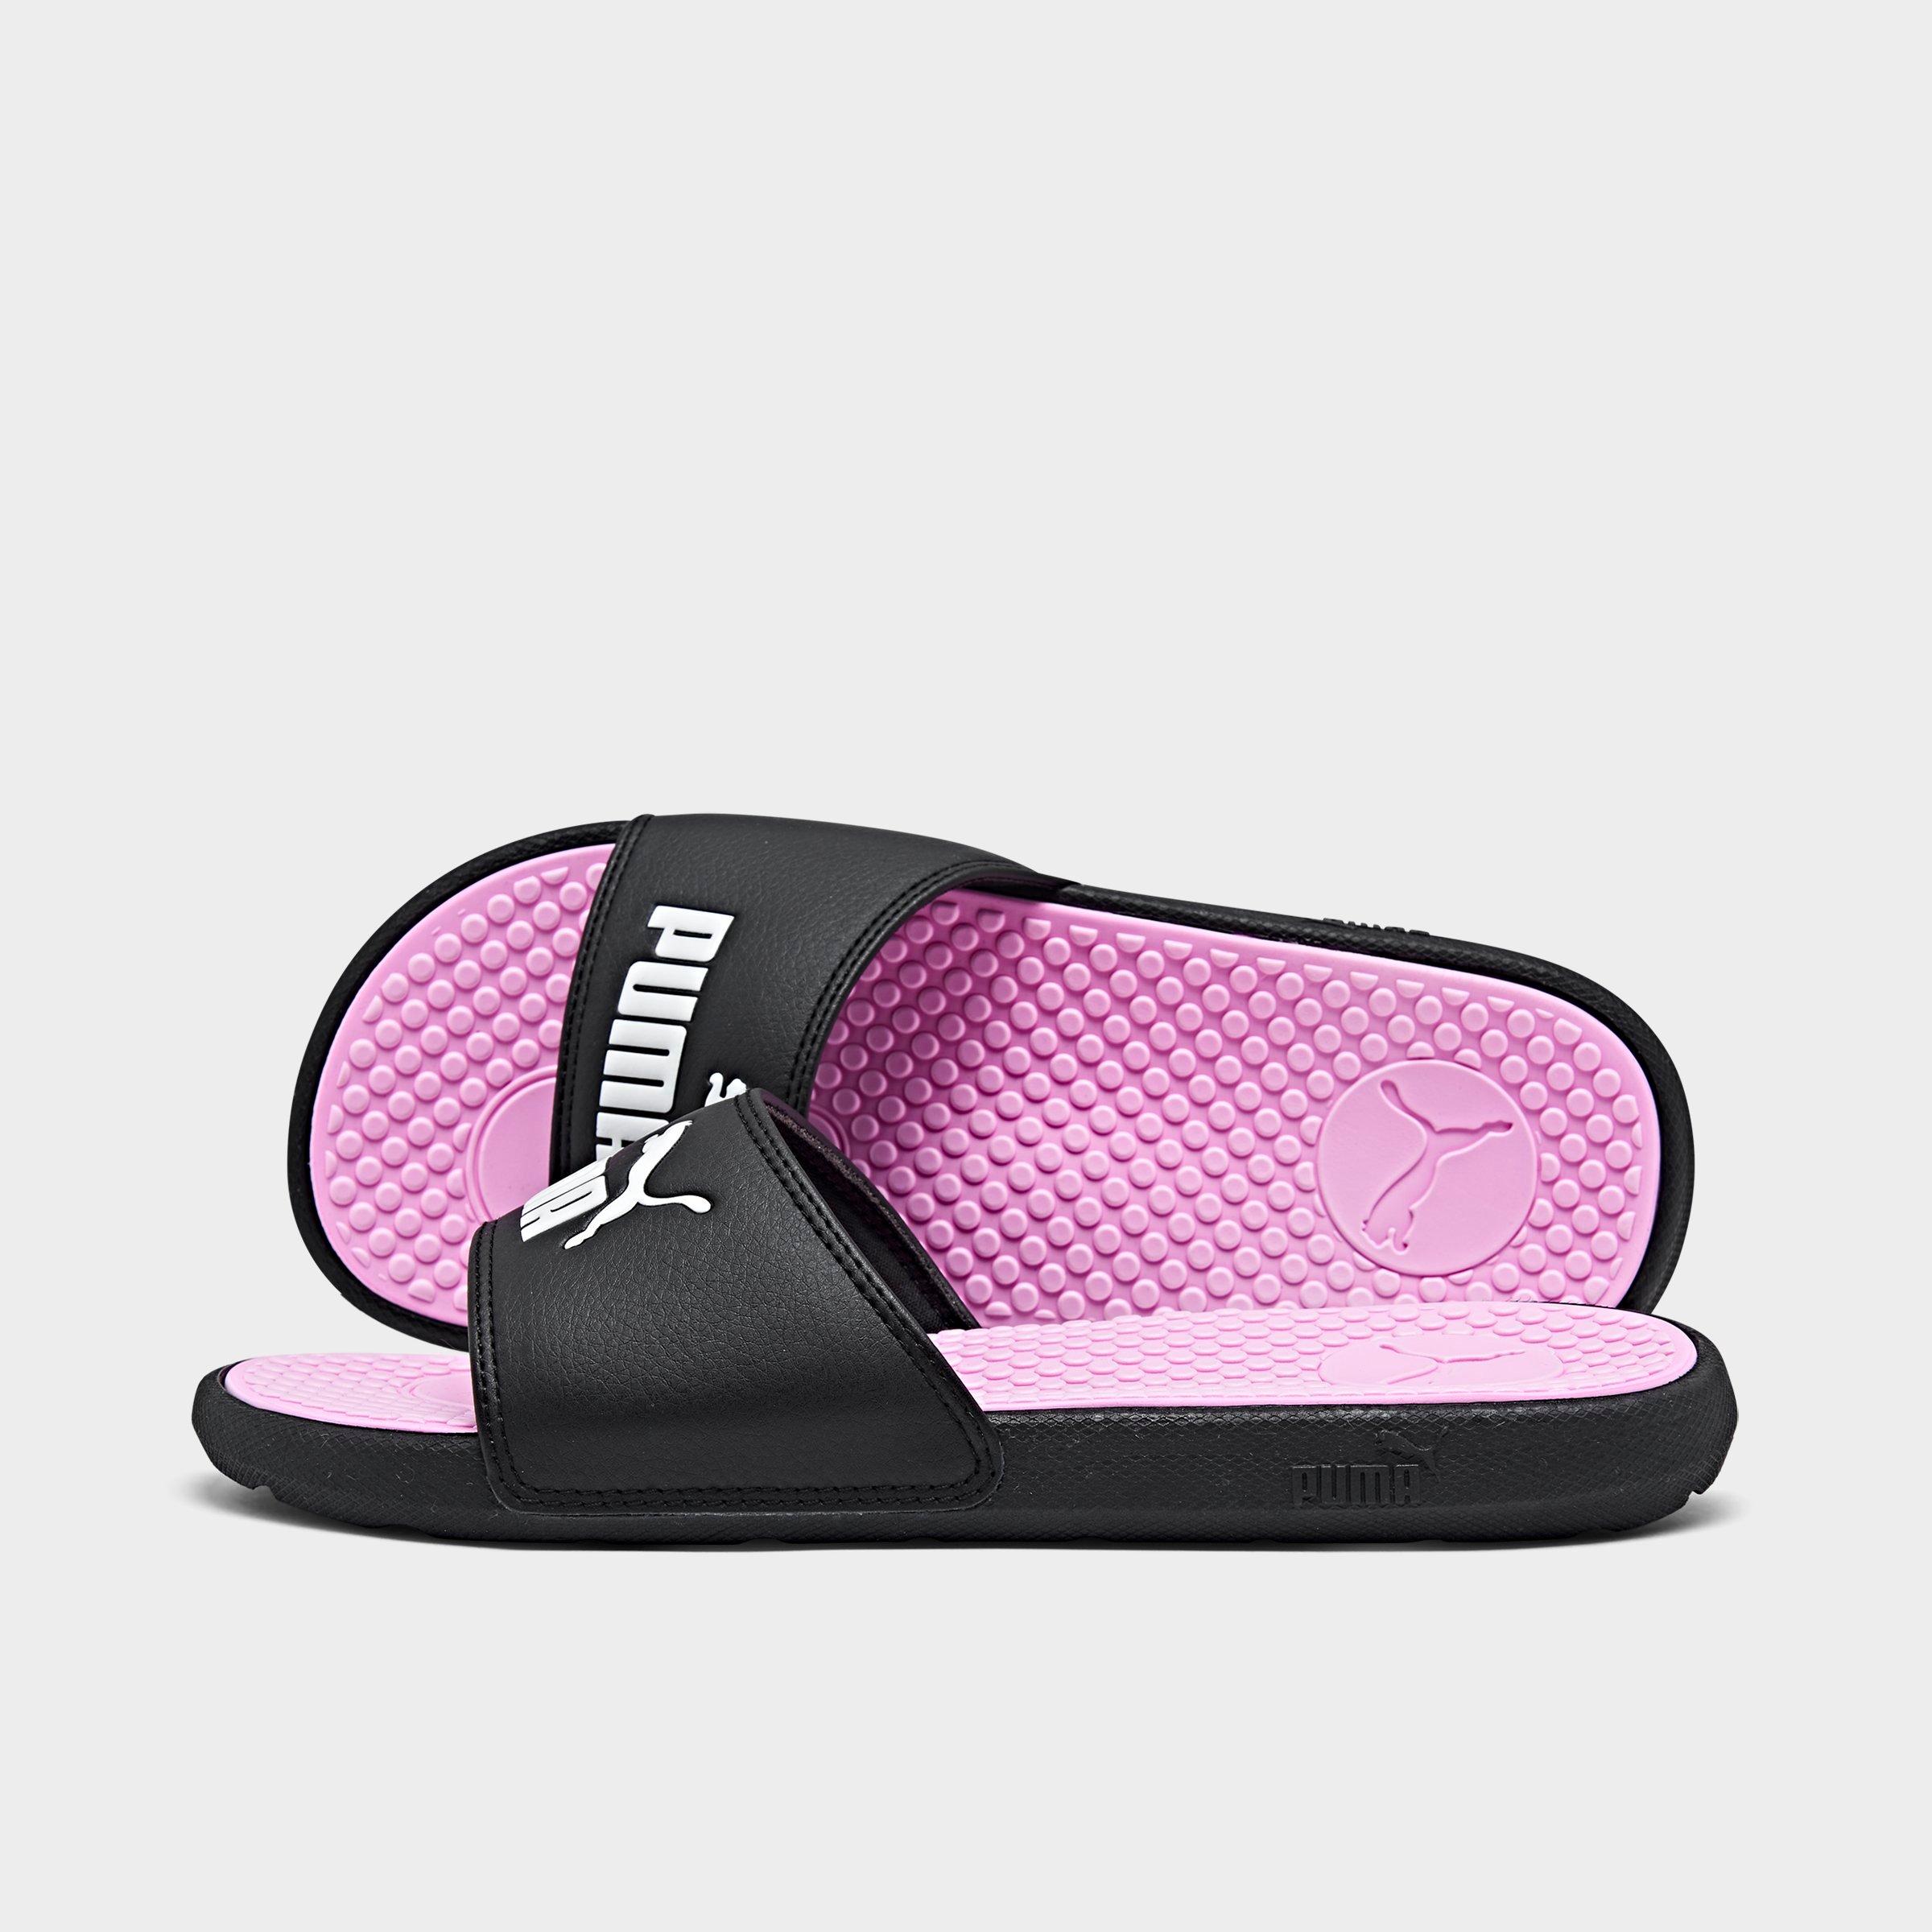 jd sports womens sandals cheap online